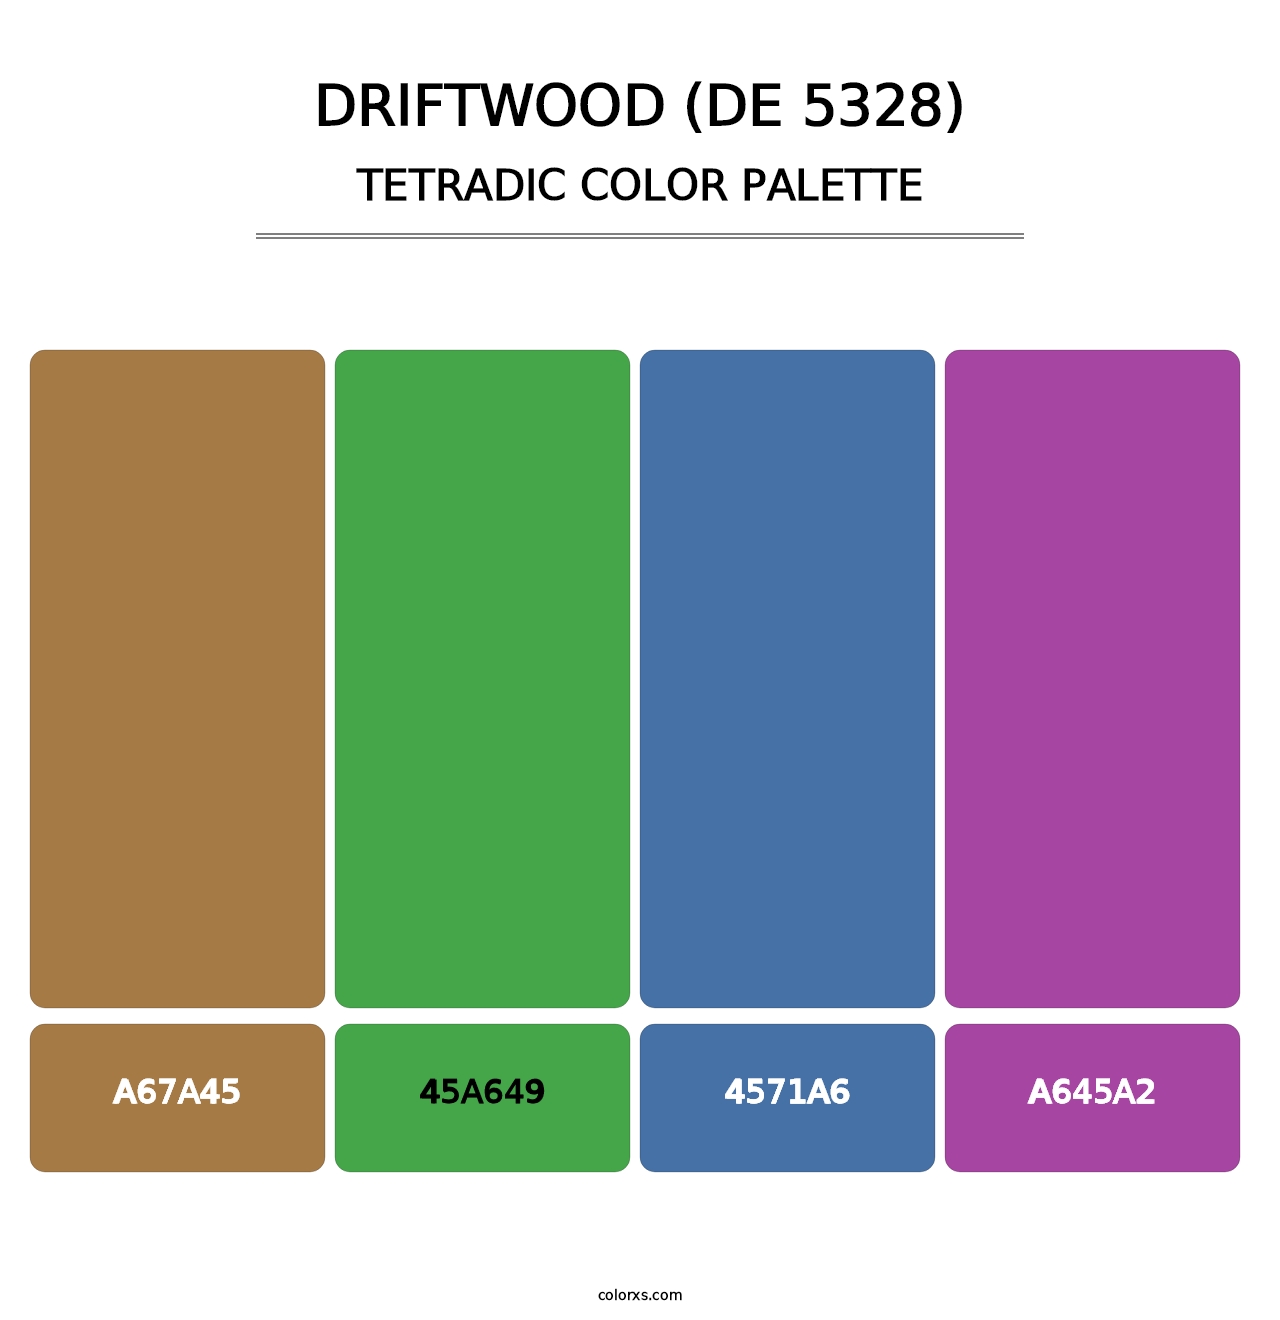 Driftwood (DE 5328) - Tetradic Color Palette